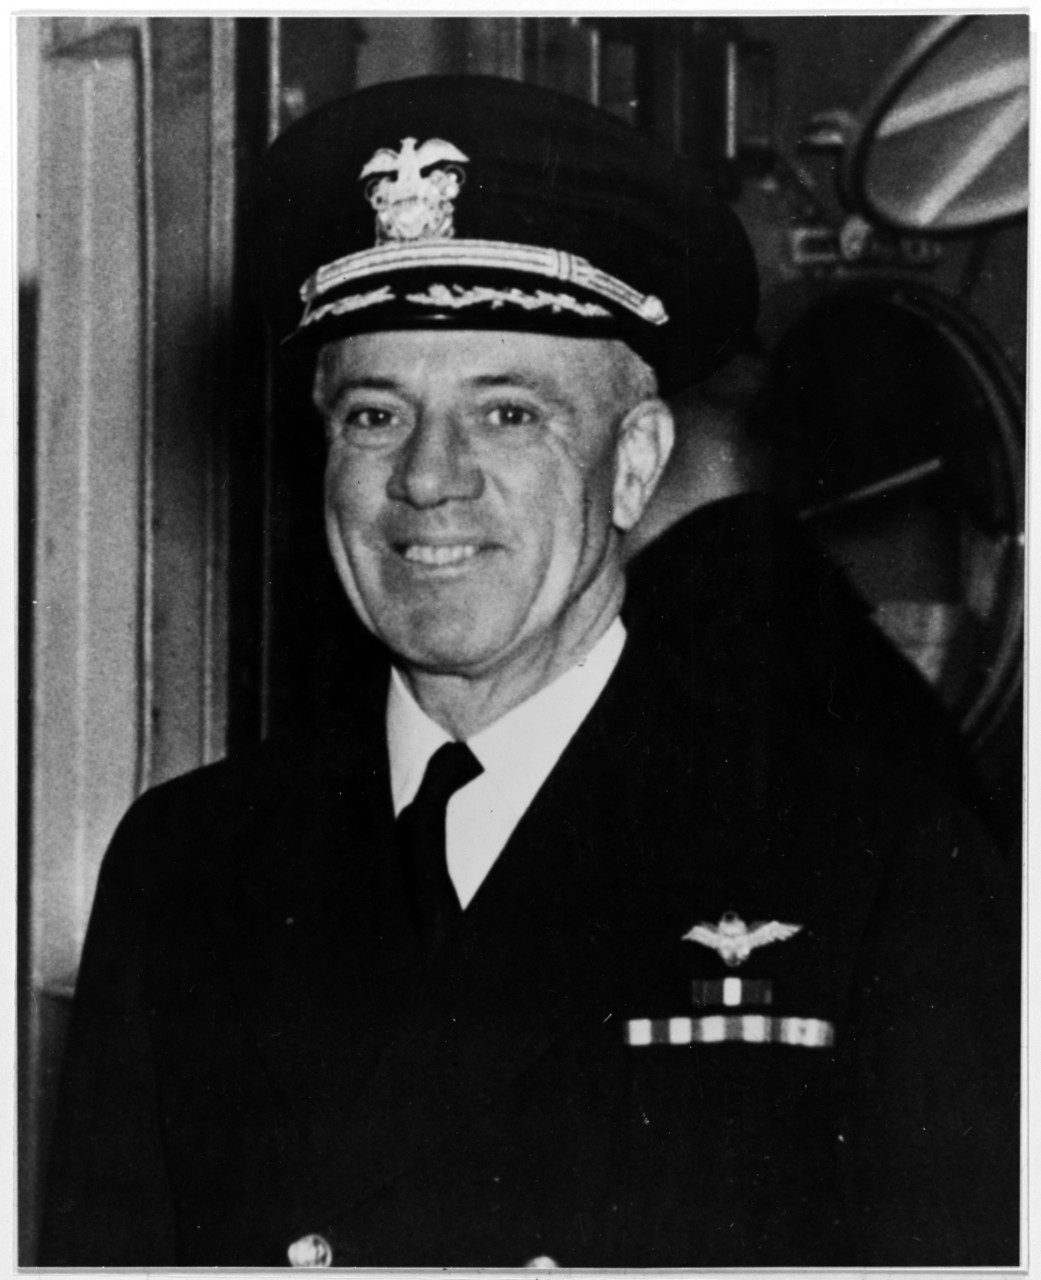 Captain Charles A. Pownall, USN